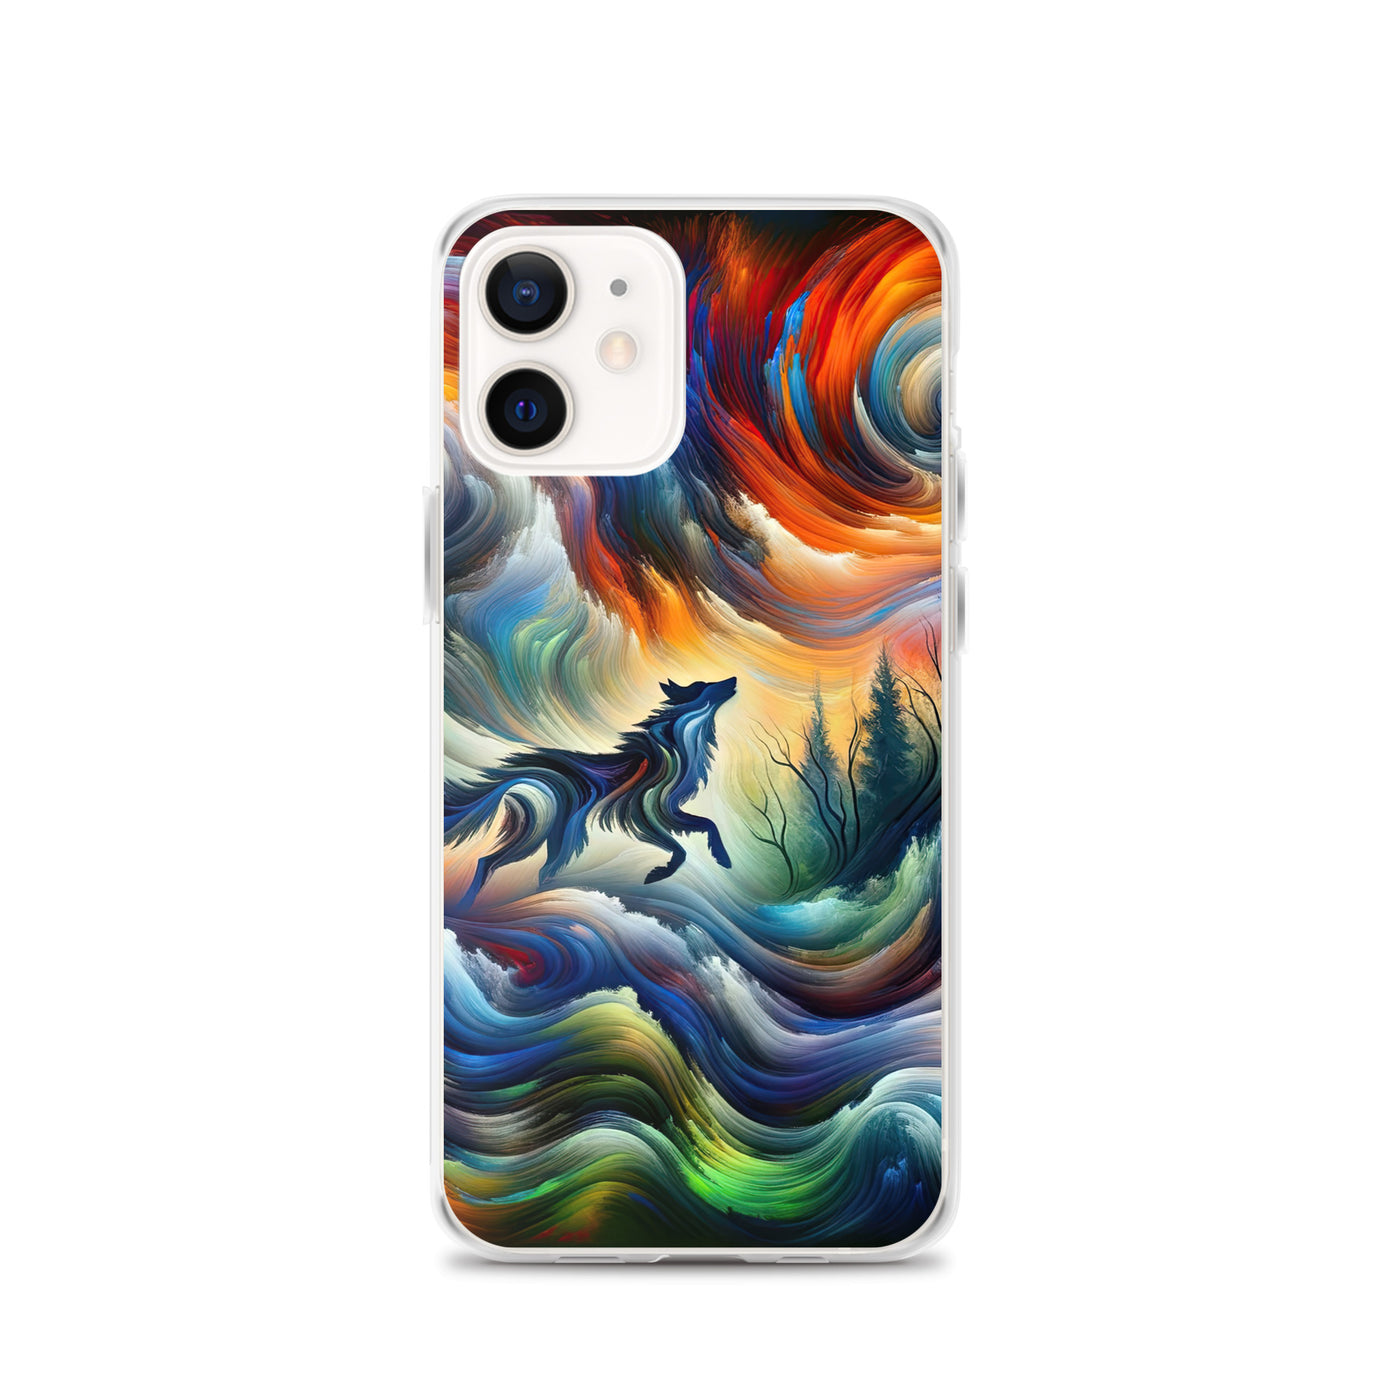 Alpen Abstraktgemälde mit Wolf Silhouette in lebhaften Farben (AN) - iPhone Schutzhülle (durchsichtig) xxx yyy zzz iPhone 12